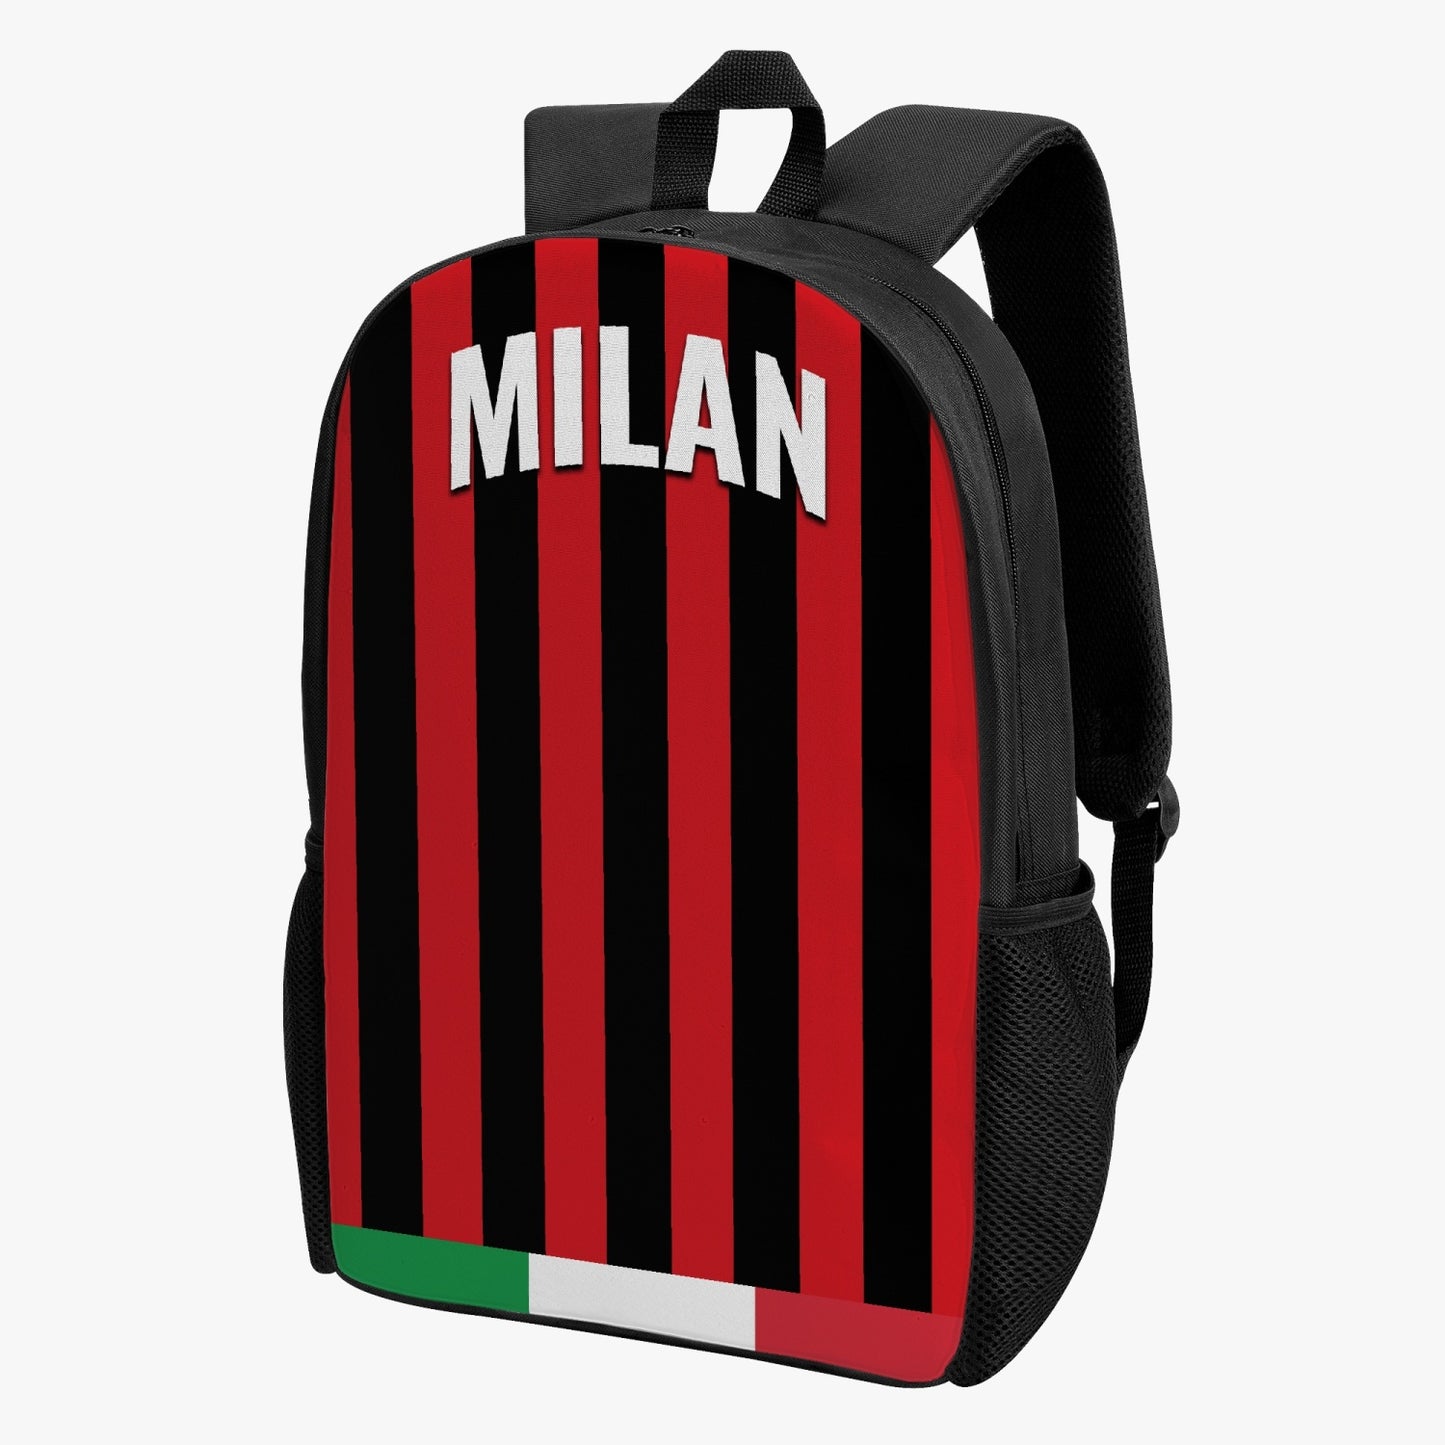 Milan Kid's School Backpack